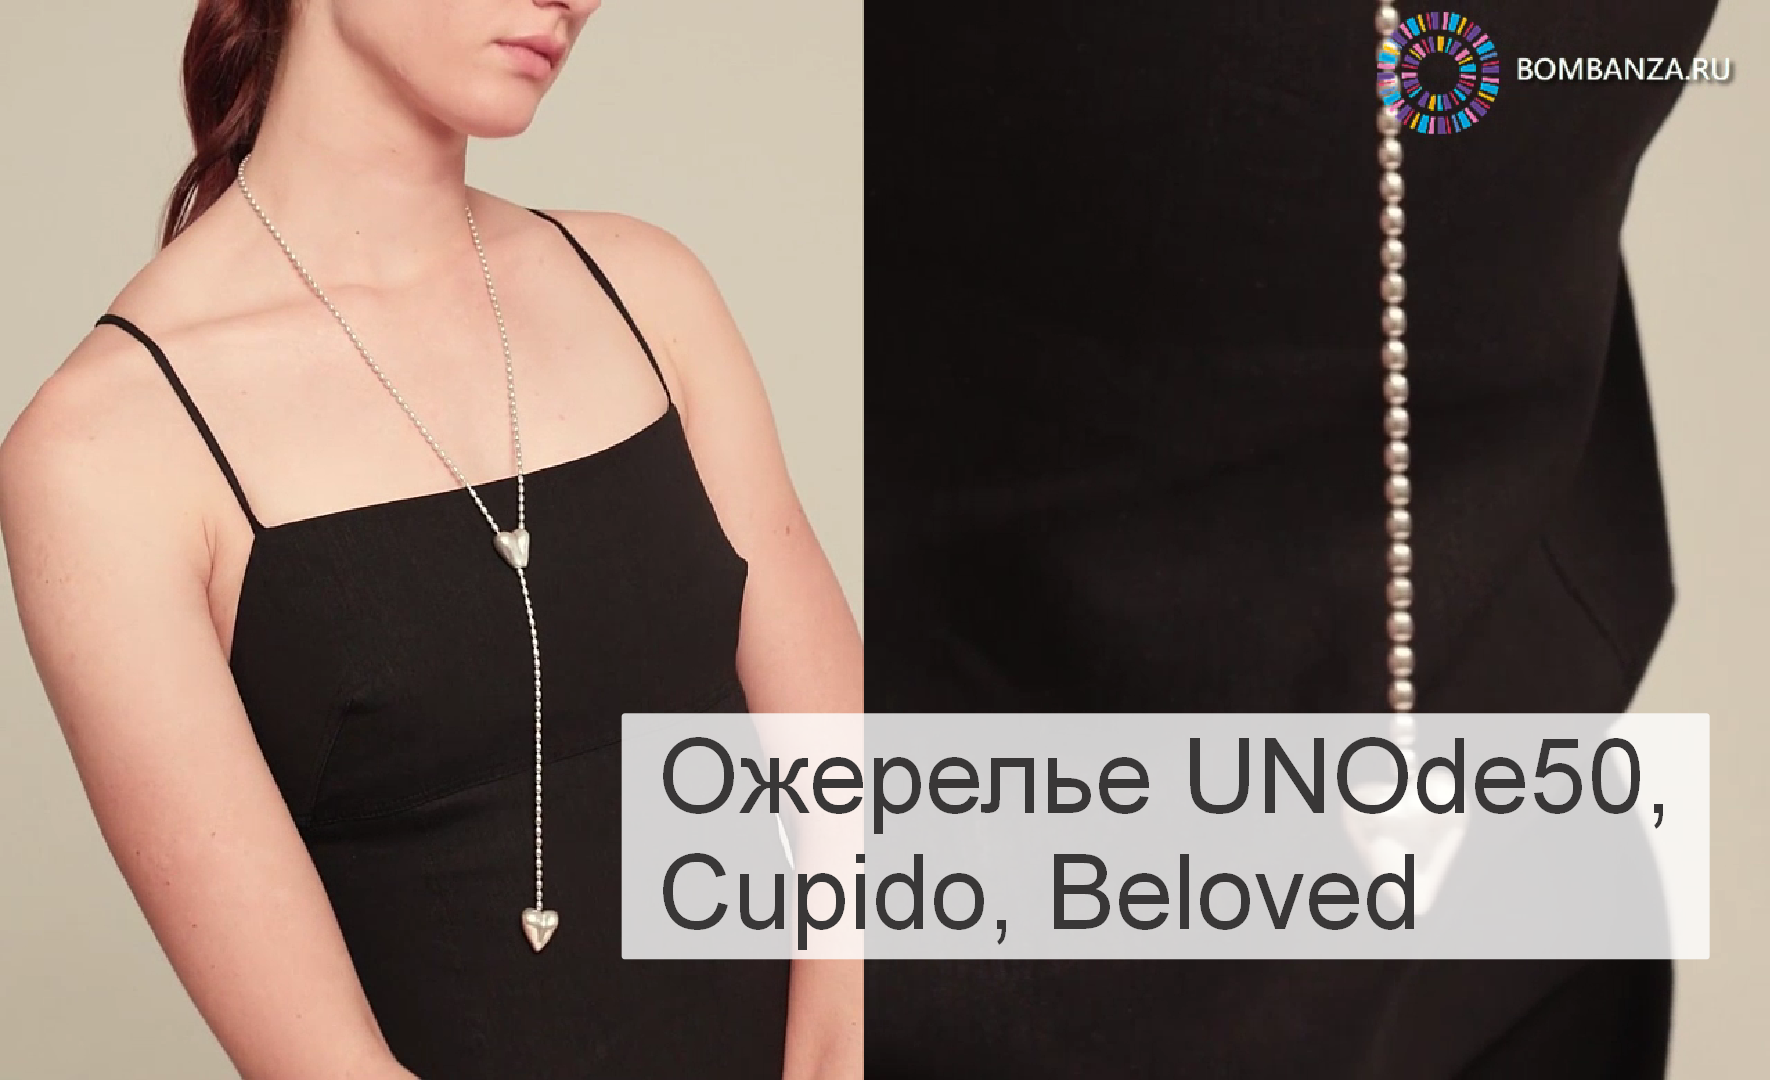 Ожерелье UNOde50, Cupido с серебром, Beloved, COL1884MTL0000U. Премиум бижутерия Испания.